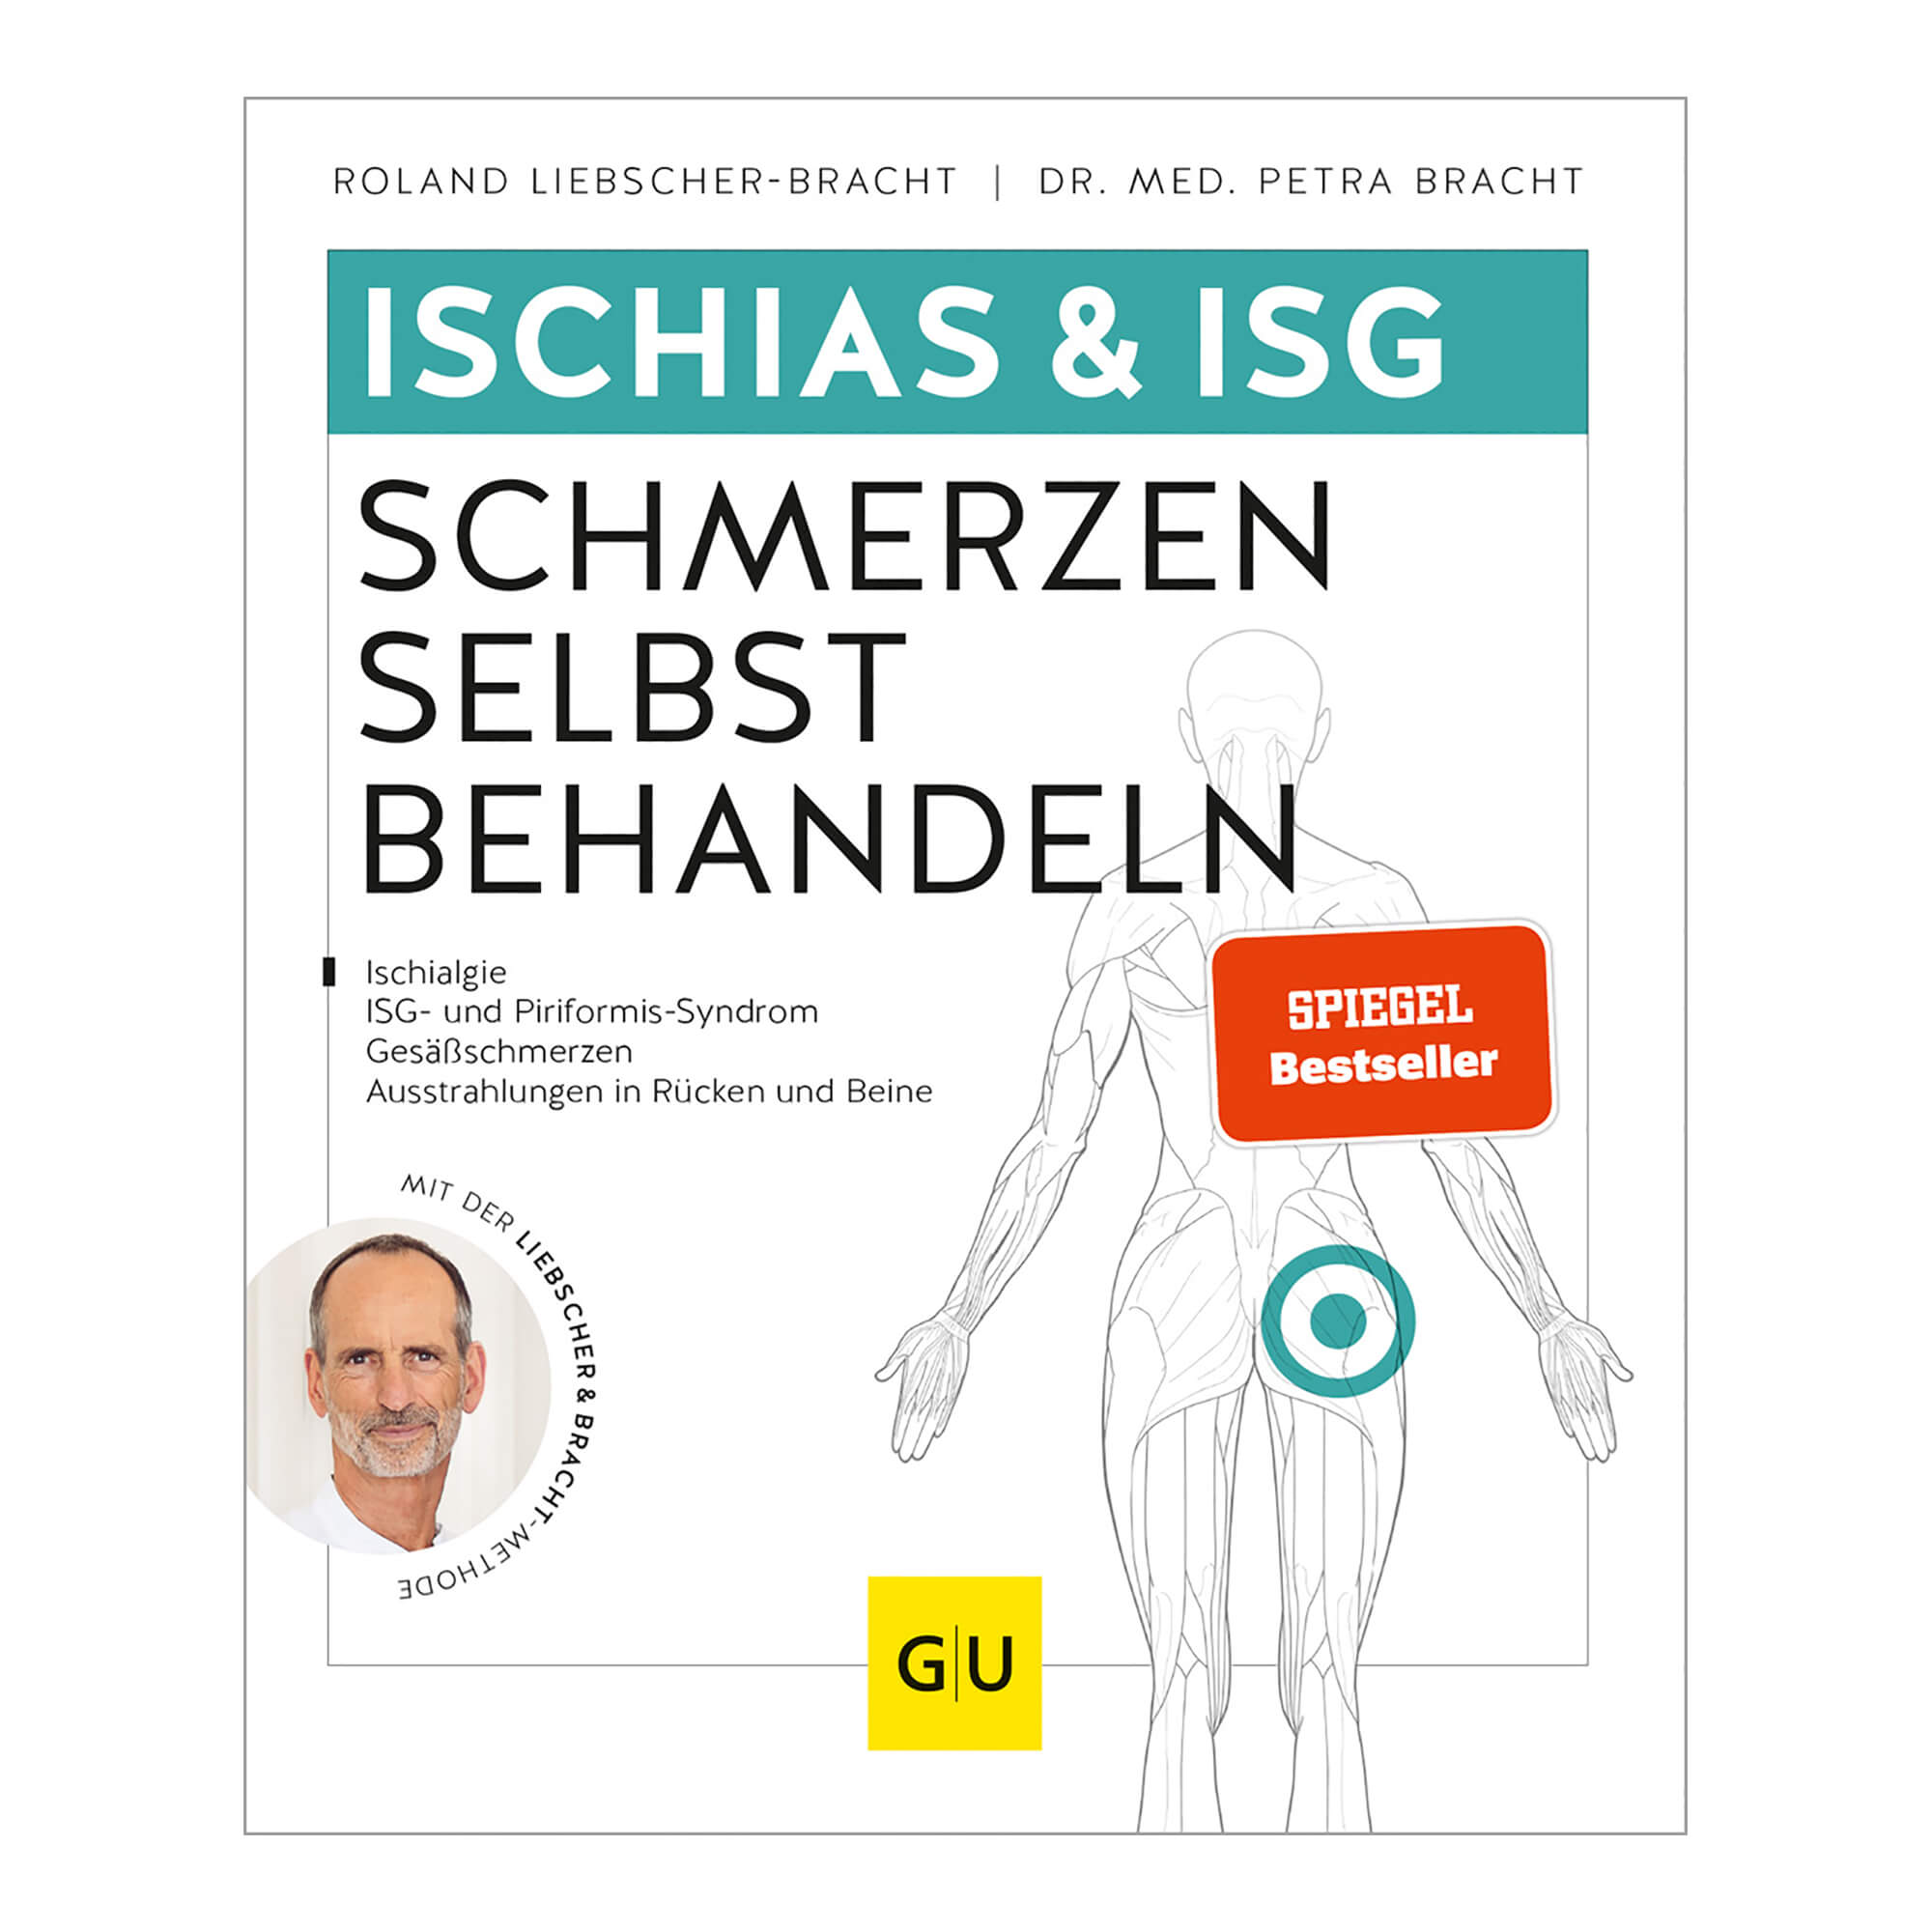 Praktisches Übungsbuch gegen Ischias- und ISG-Schmerzen mit der Liebscher & Bracht-Methode.